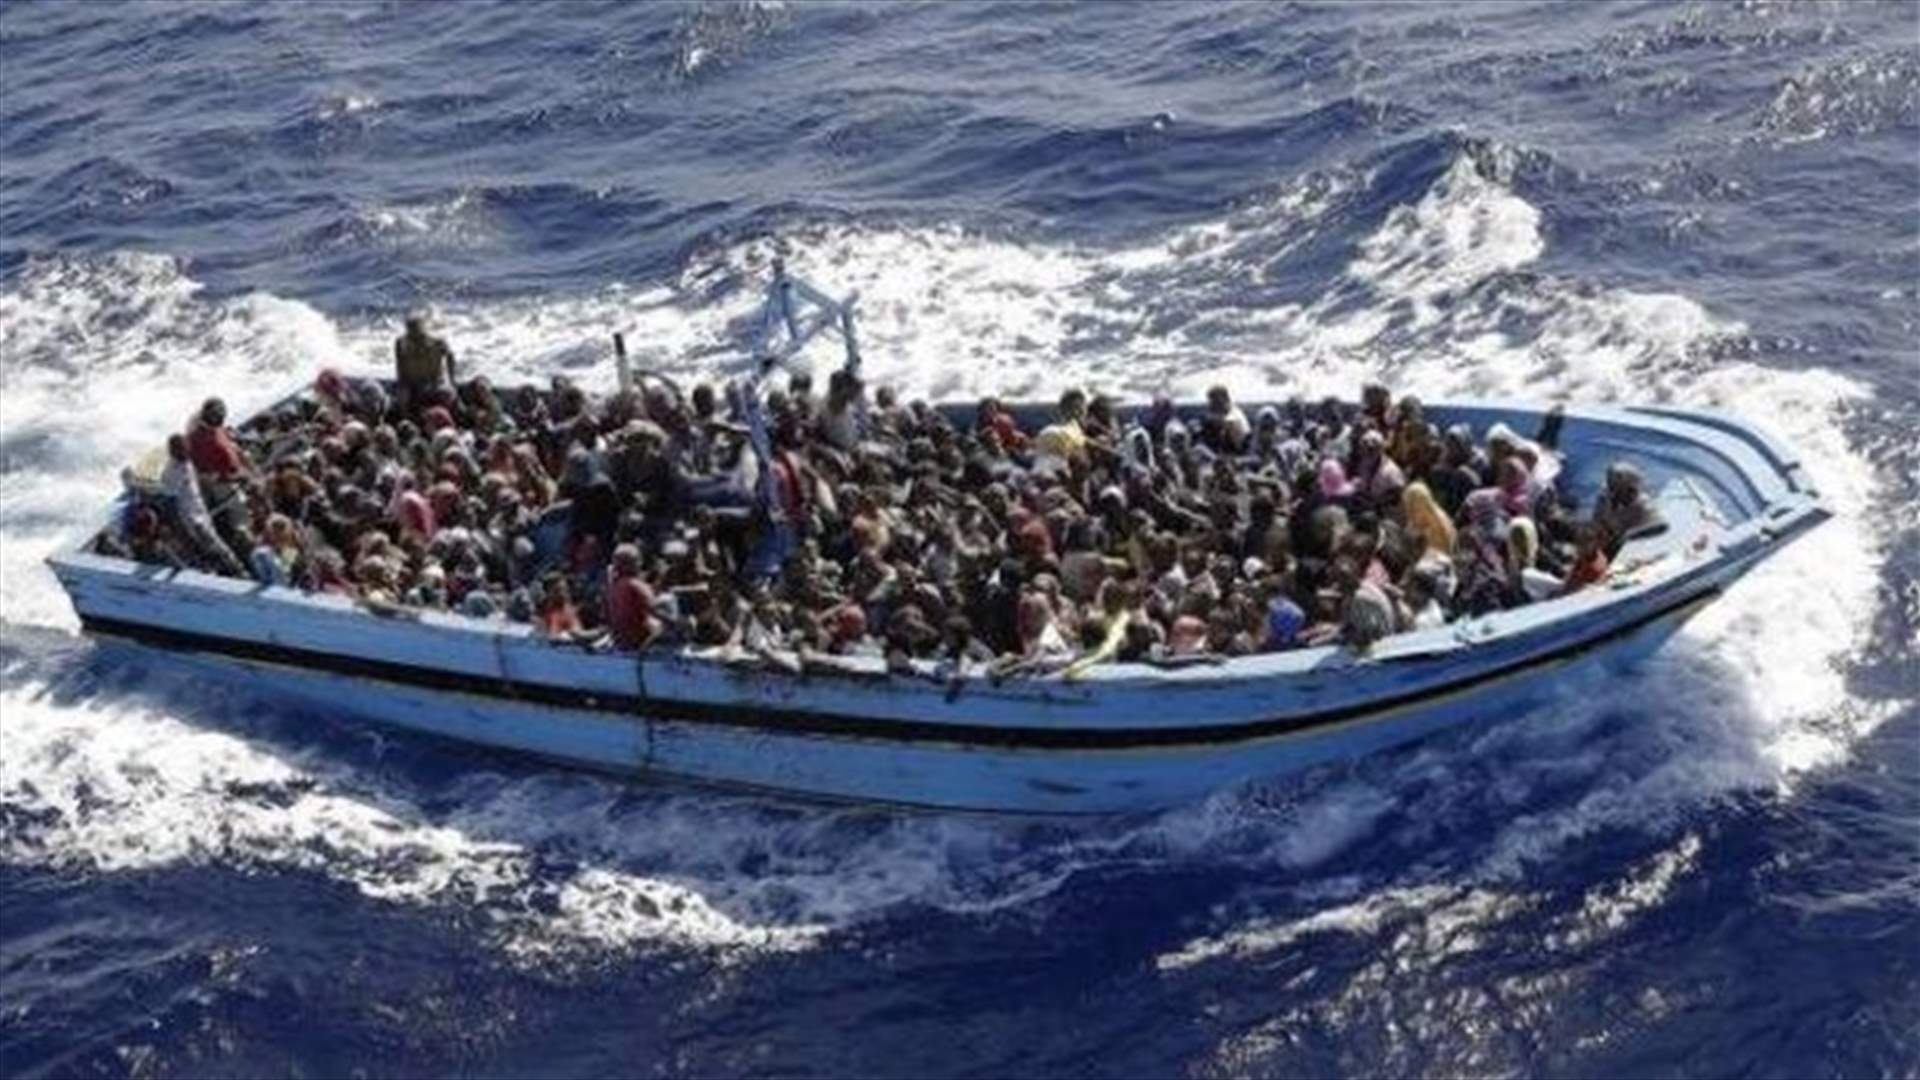 UN: 700 migrants feared dead in Mediterranean shipwrecks